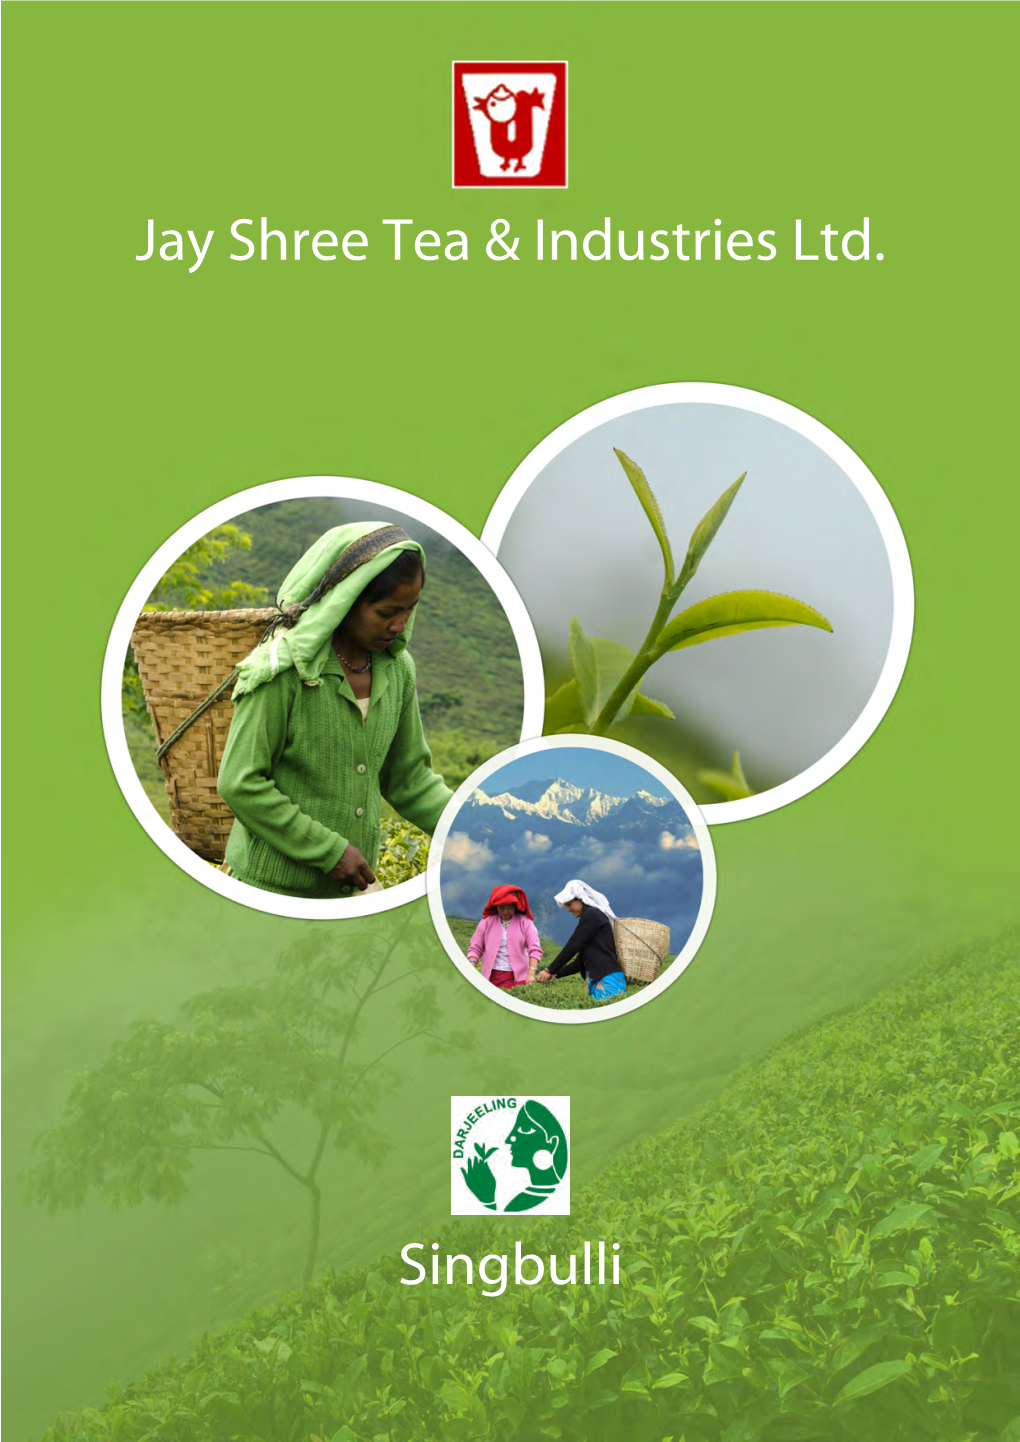 Singbulli Jay Shree Tea & Industries Ltd